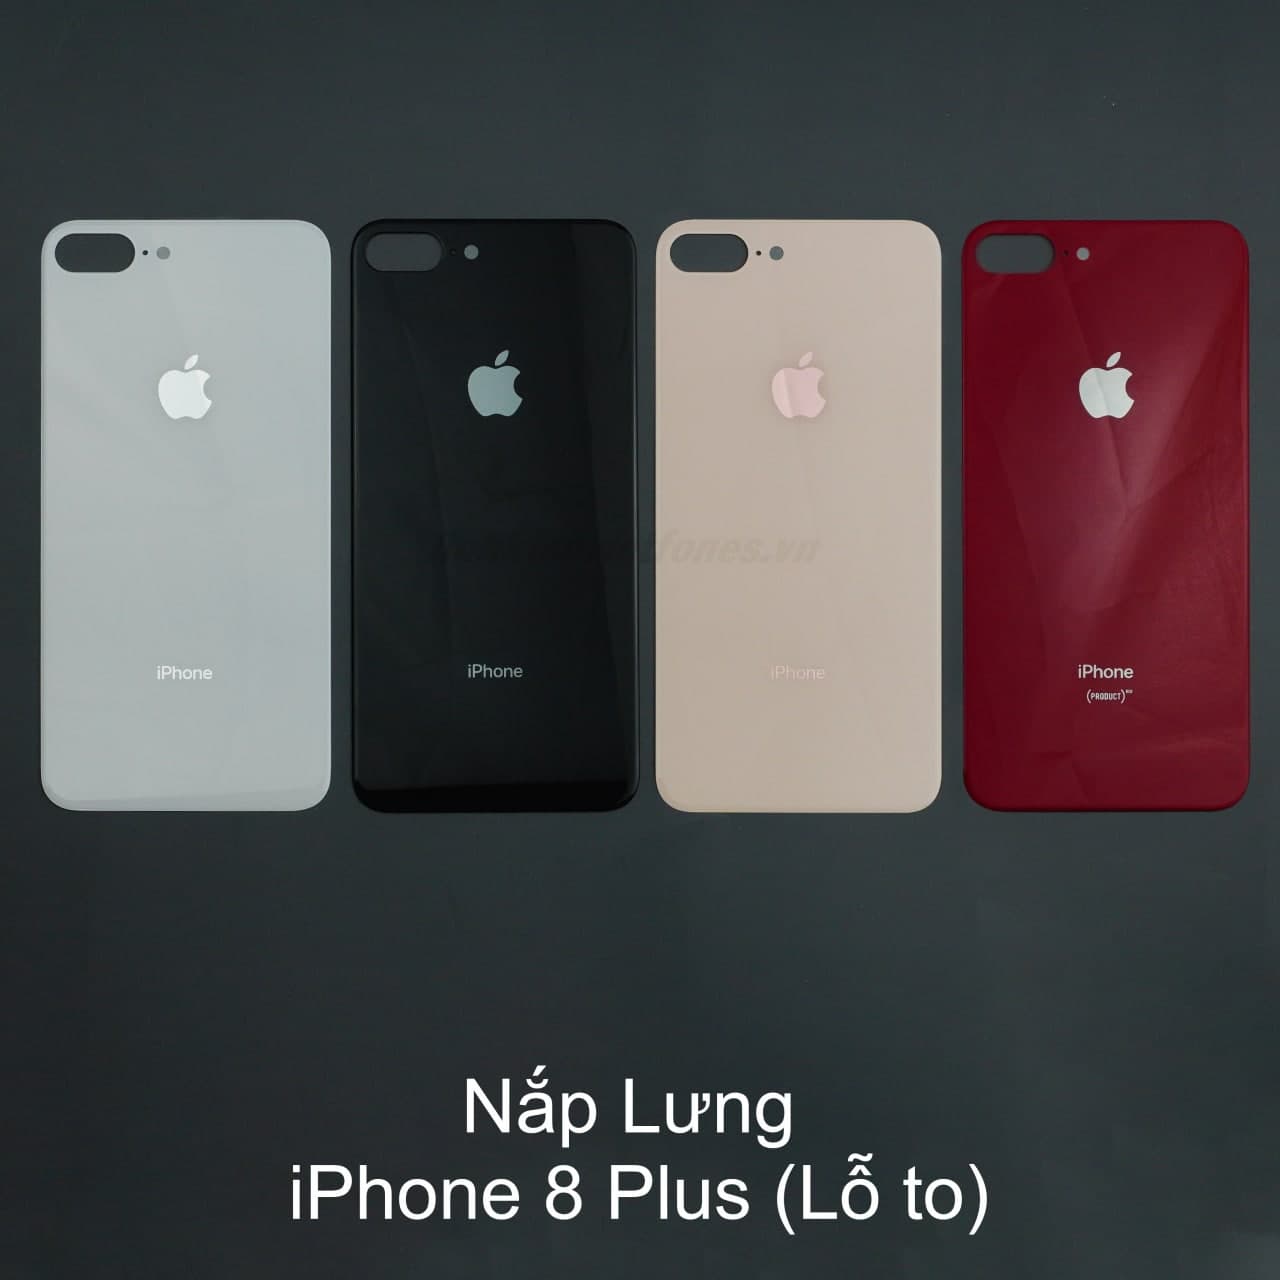 iphone 8 Plus 64gb màu Vàng hồng còn BH 5 tháng - 104629064